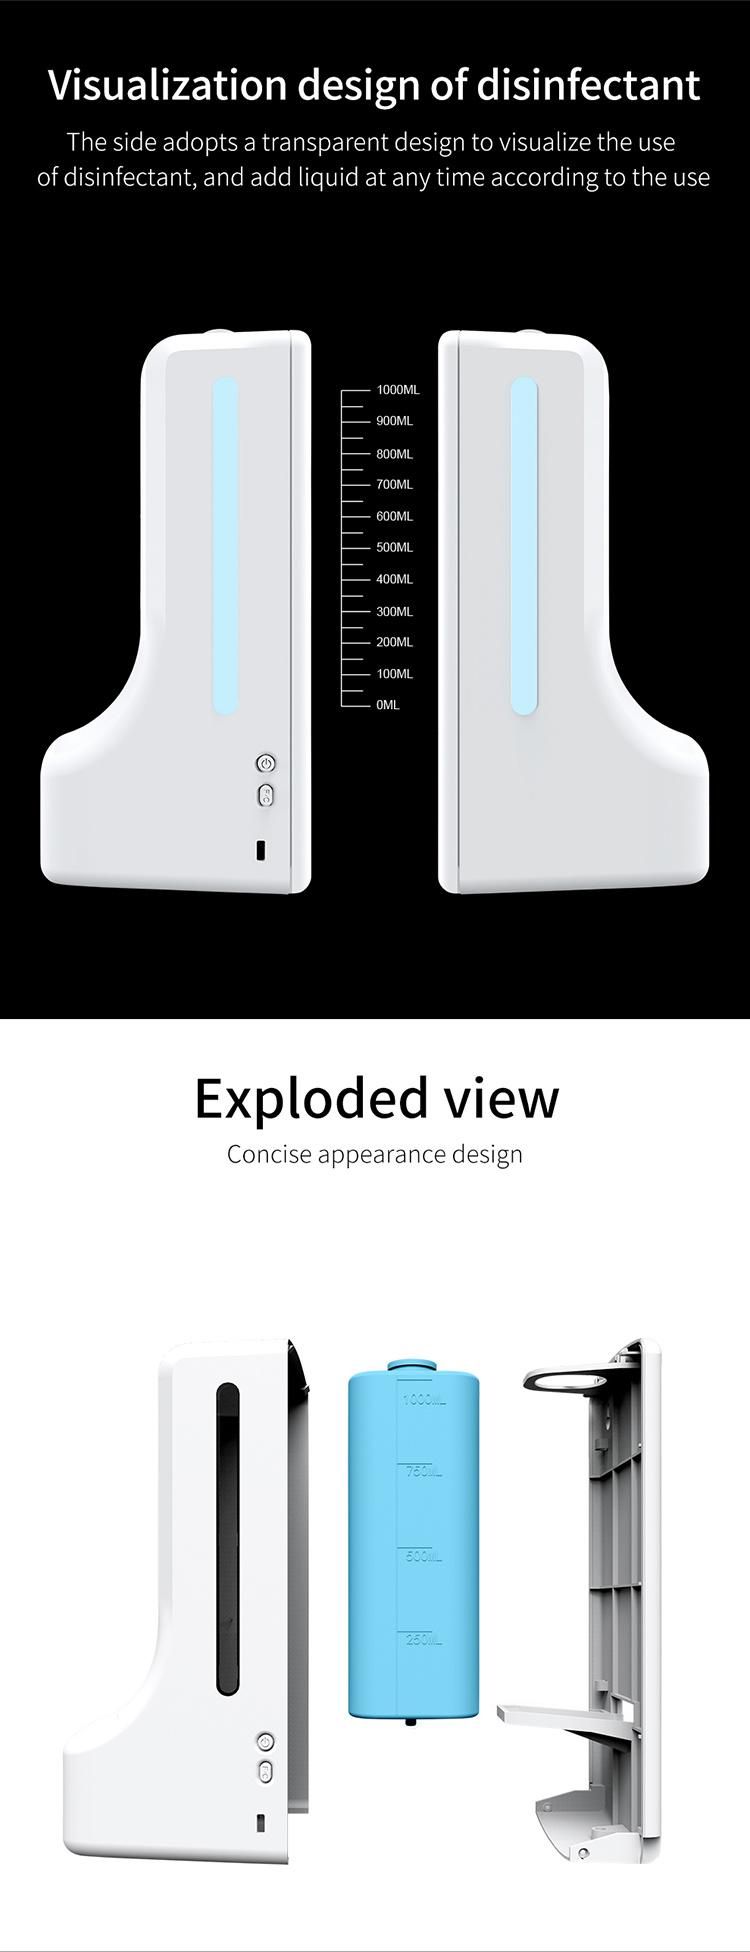 Saige 1000ml K9 Thermometer Intelligent Hand Sanitizer Liquid Dispenser